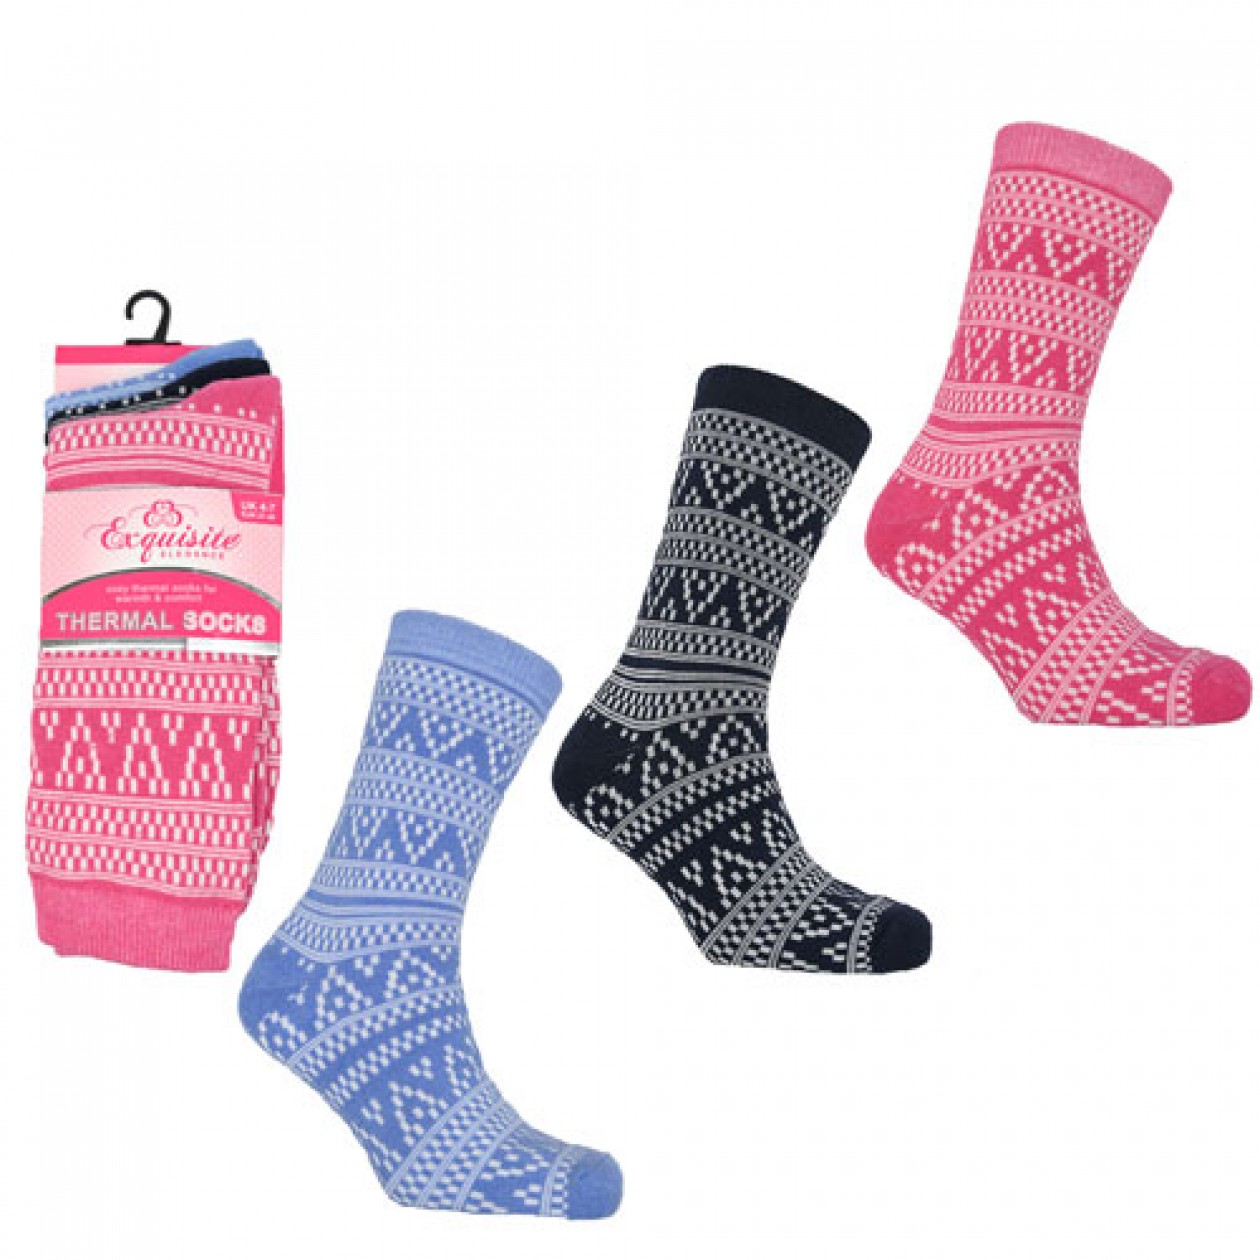 Ladies 3 Pack Exquisite Thermal Socks Aztec